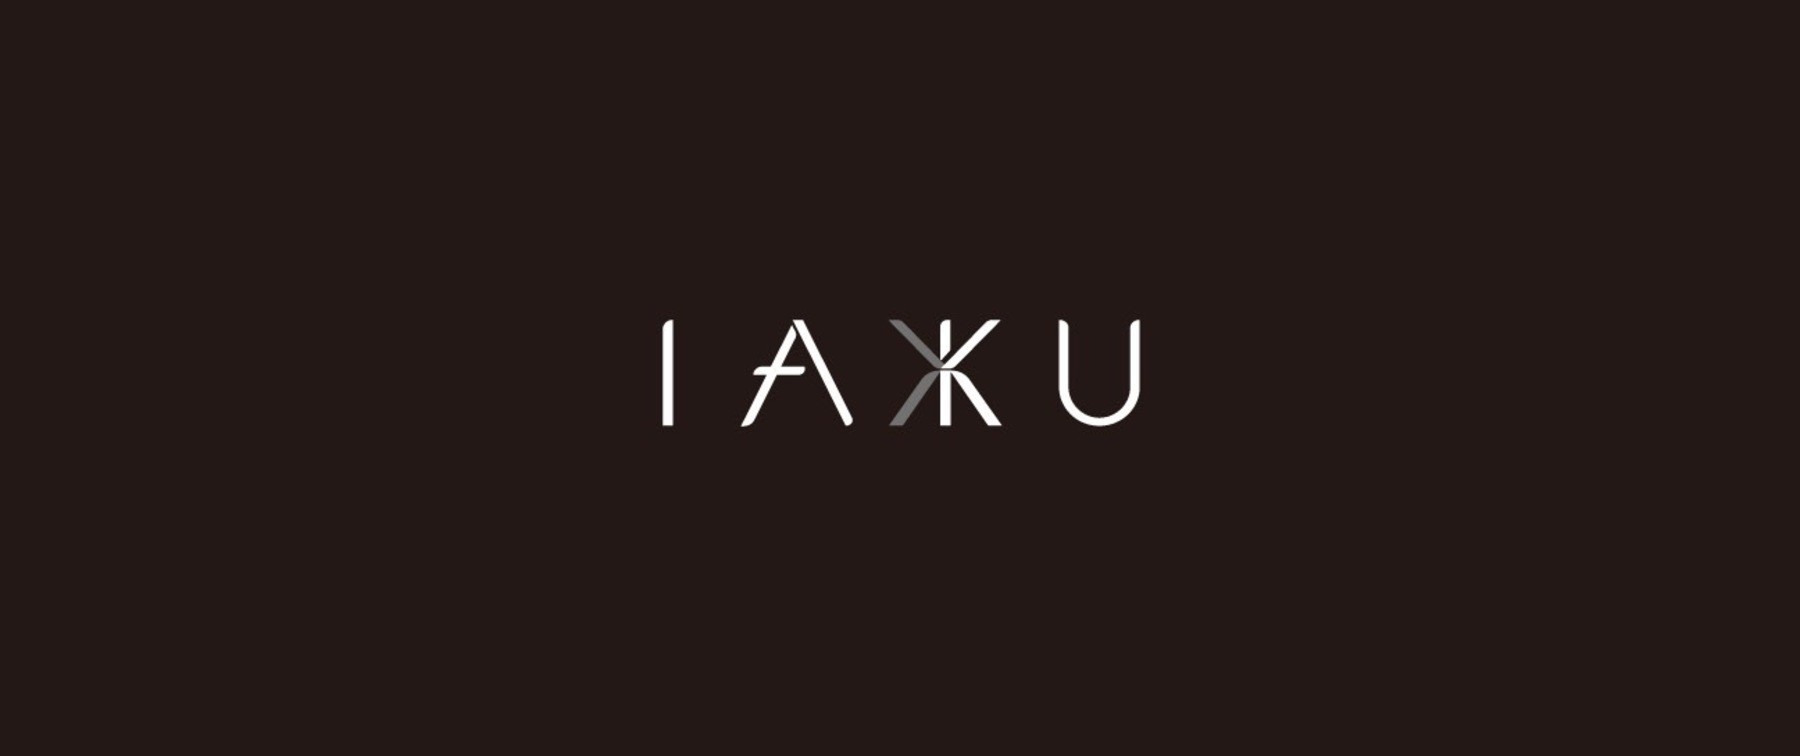 IAKU's images1